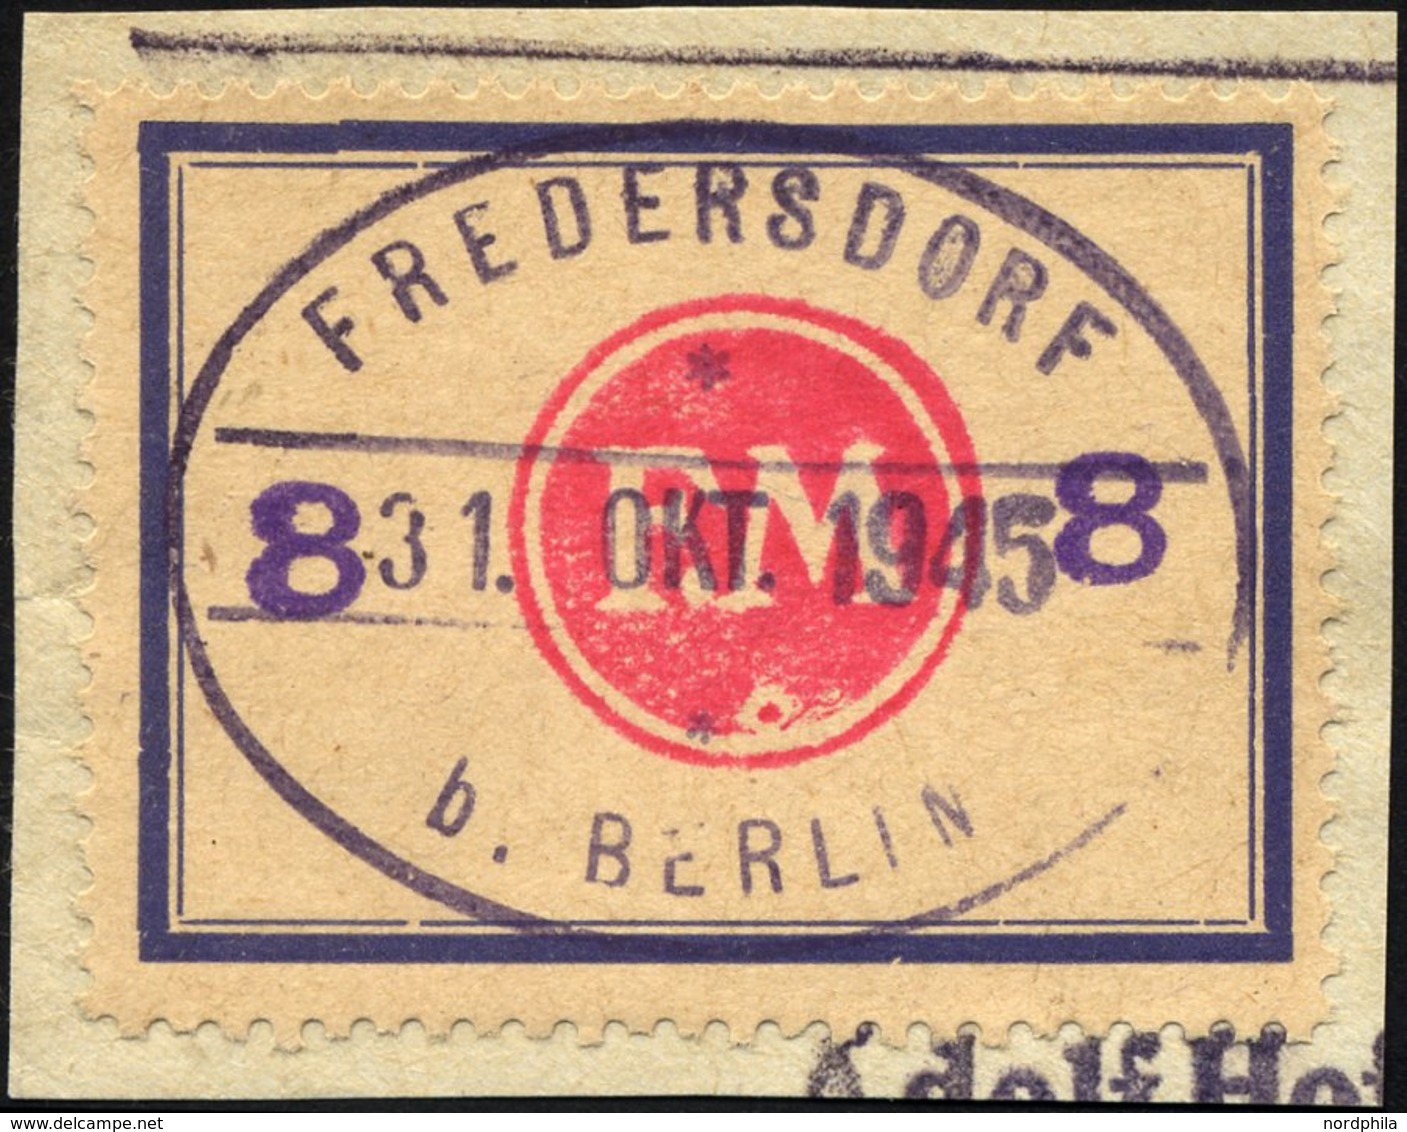 FREDERSDORF Sp 172F BrfStk, 1945, 8 Pf., Rahmengröße 43x31.5 Mm, Große Wertziffern, Mit Abart Wertziffern Seitlich, Prac - Private & Lokale Post